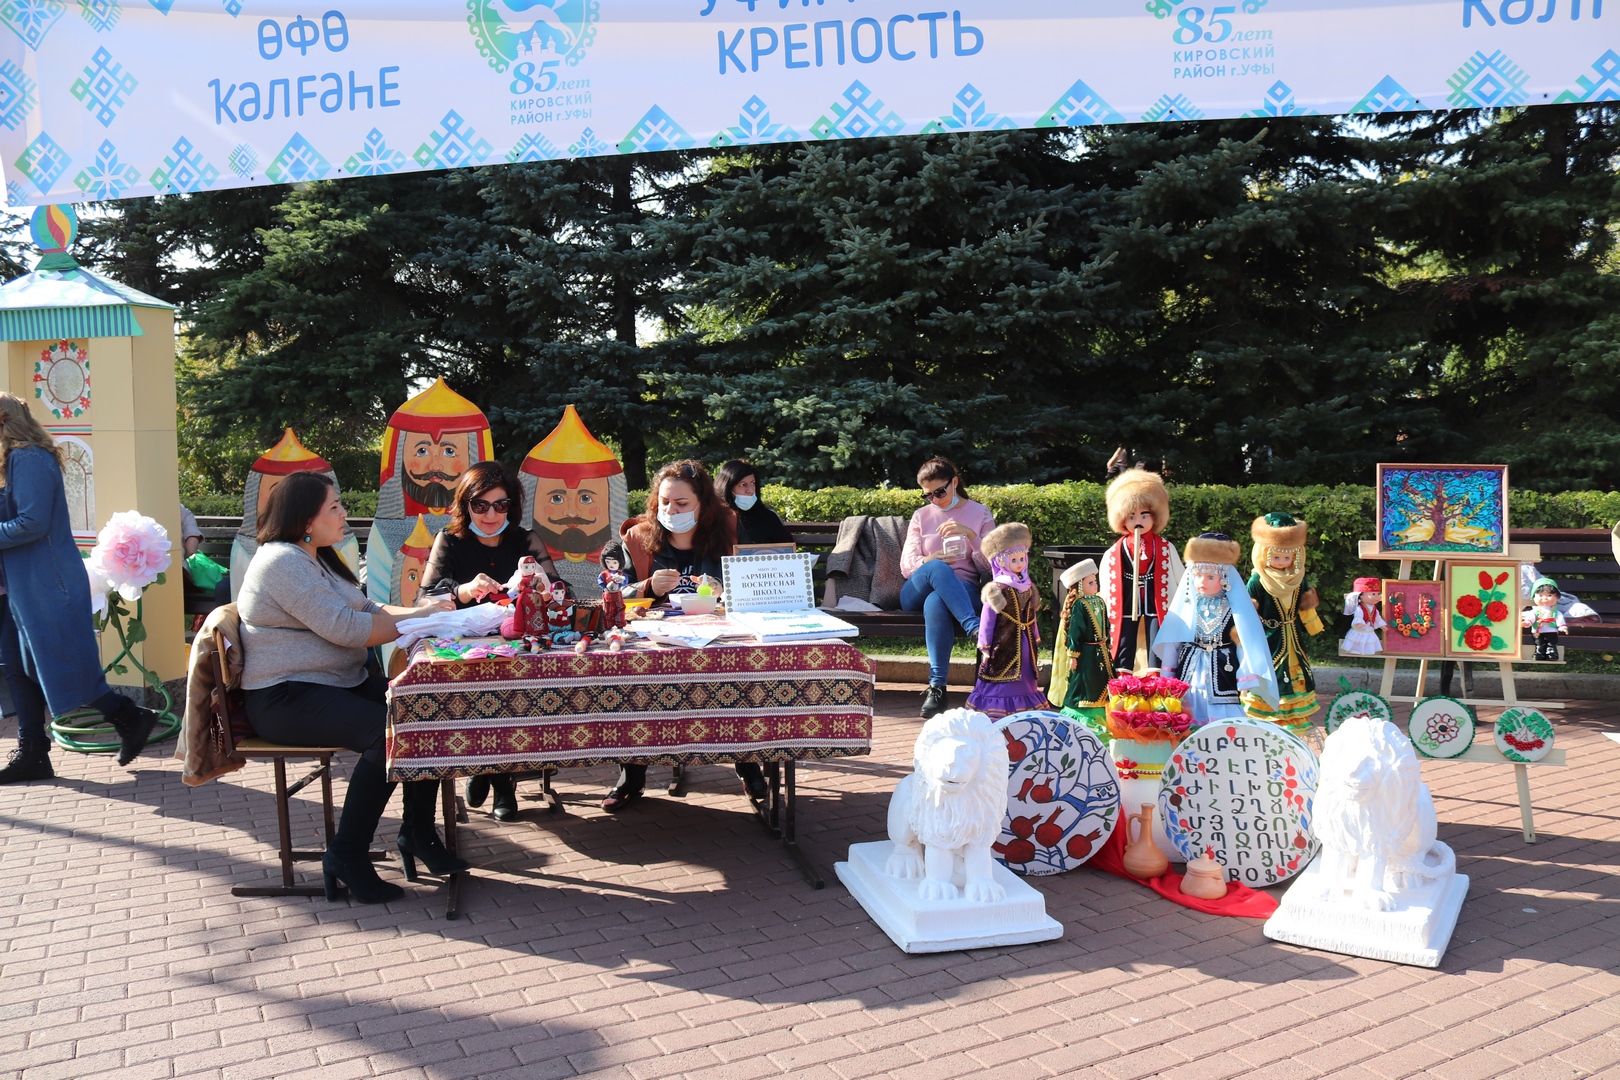 Кировский район Уфы отмечает свой 85-летний юбилей масштабным фестивалем